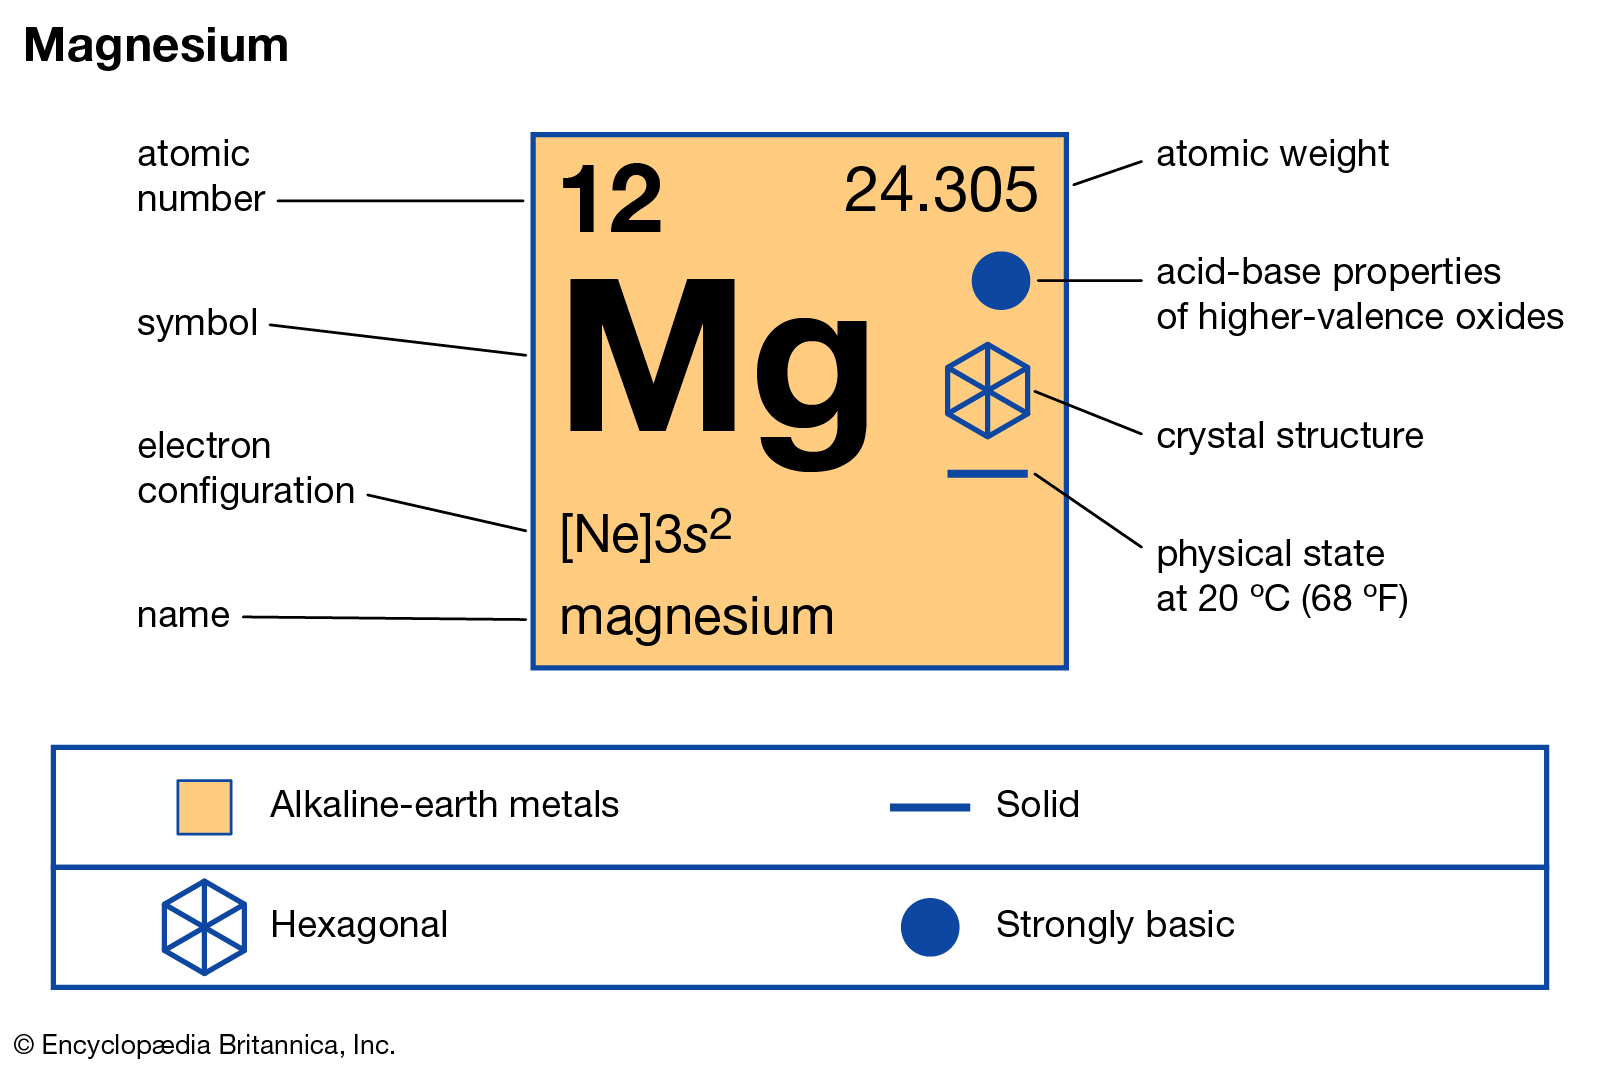 Магний название элемента. Магний химический элемент. Магний хим элемент. MG магний. Магний химический элемент в таблице.